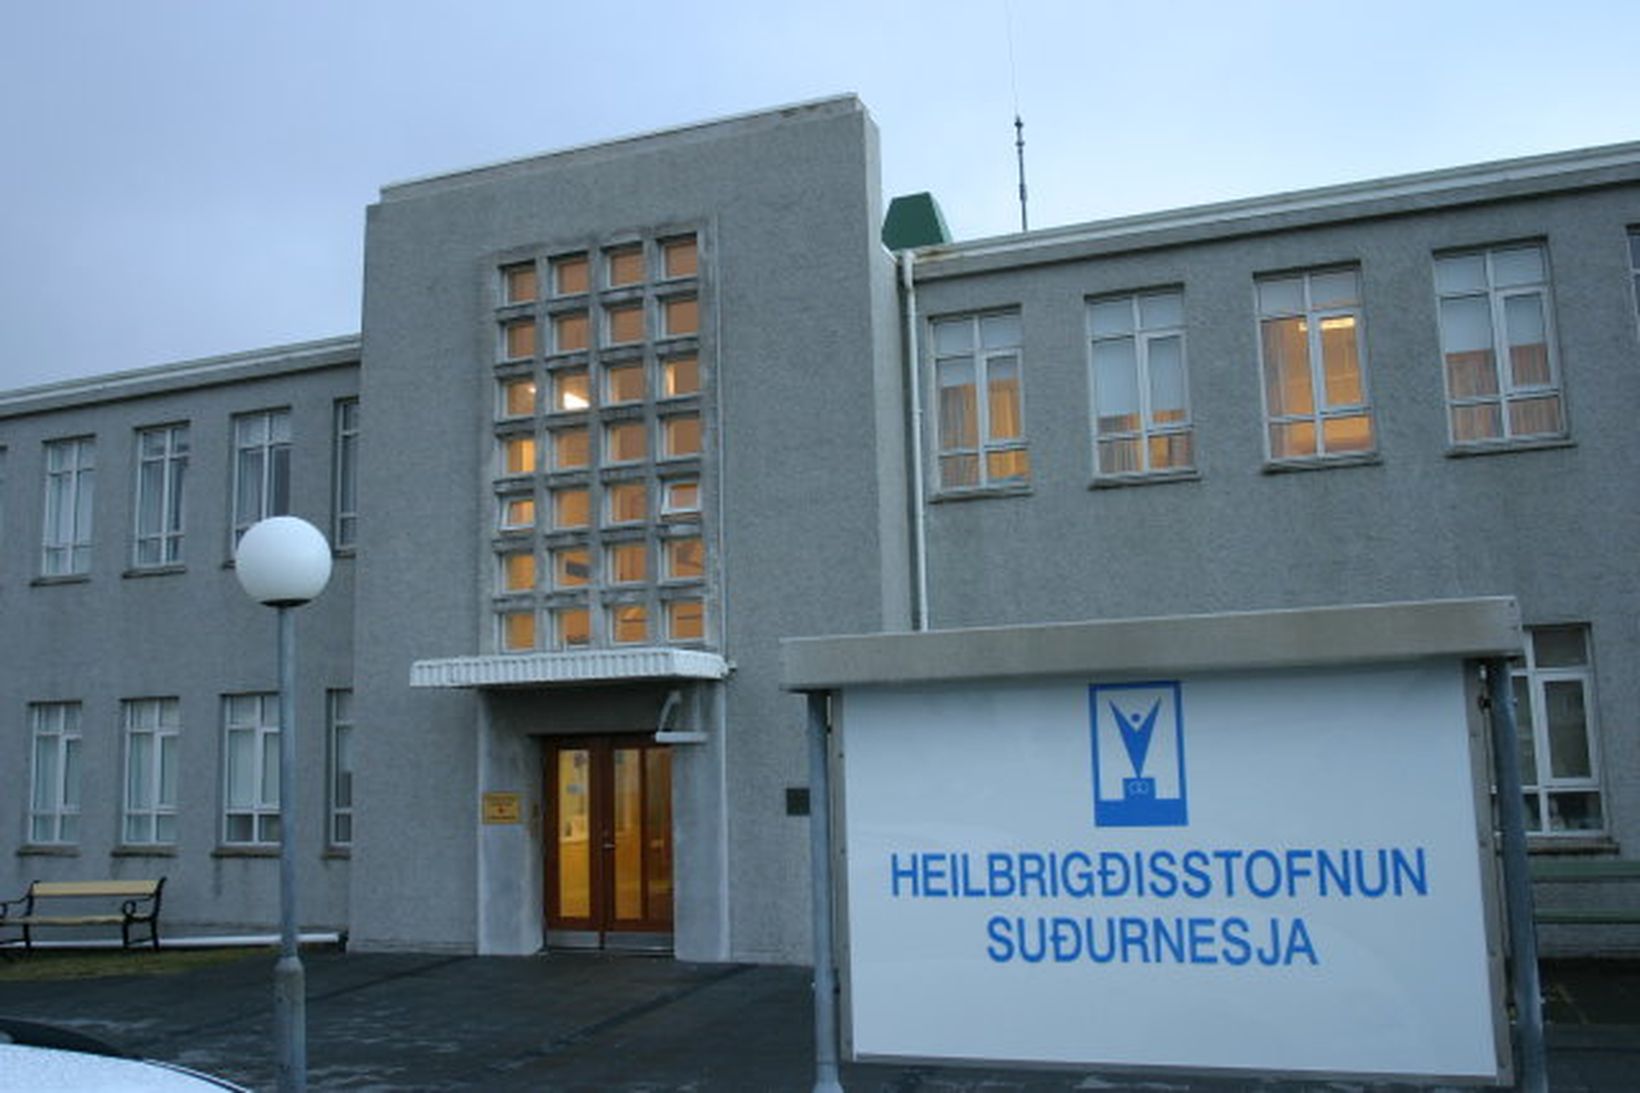 Sjúkrahús Keflavíkur heyrir undir Heilbrigðisstofnun Suðurnesja.